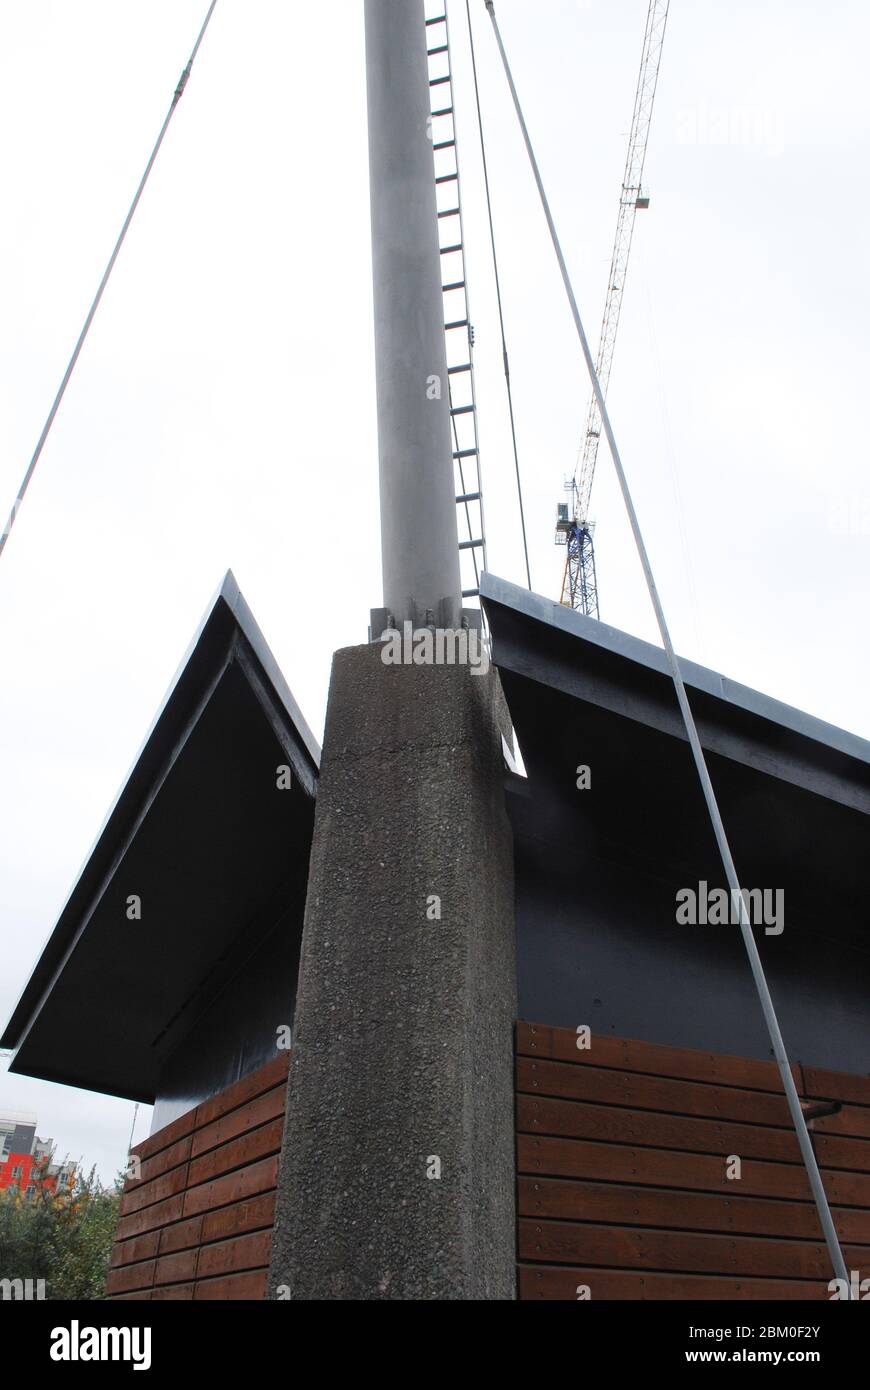 Communication Signal Shipping Boats Weather Radar Station, Greenwich Peninsula, London Stock Photo